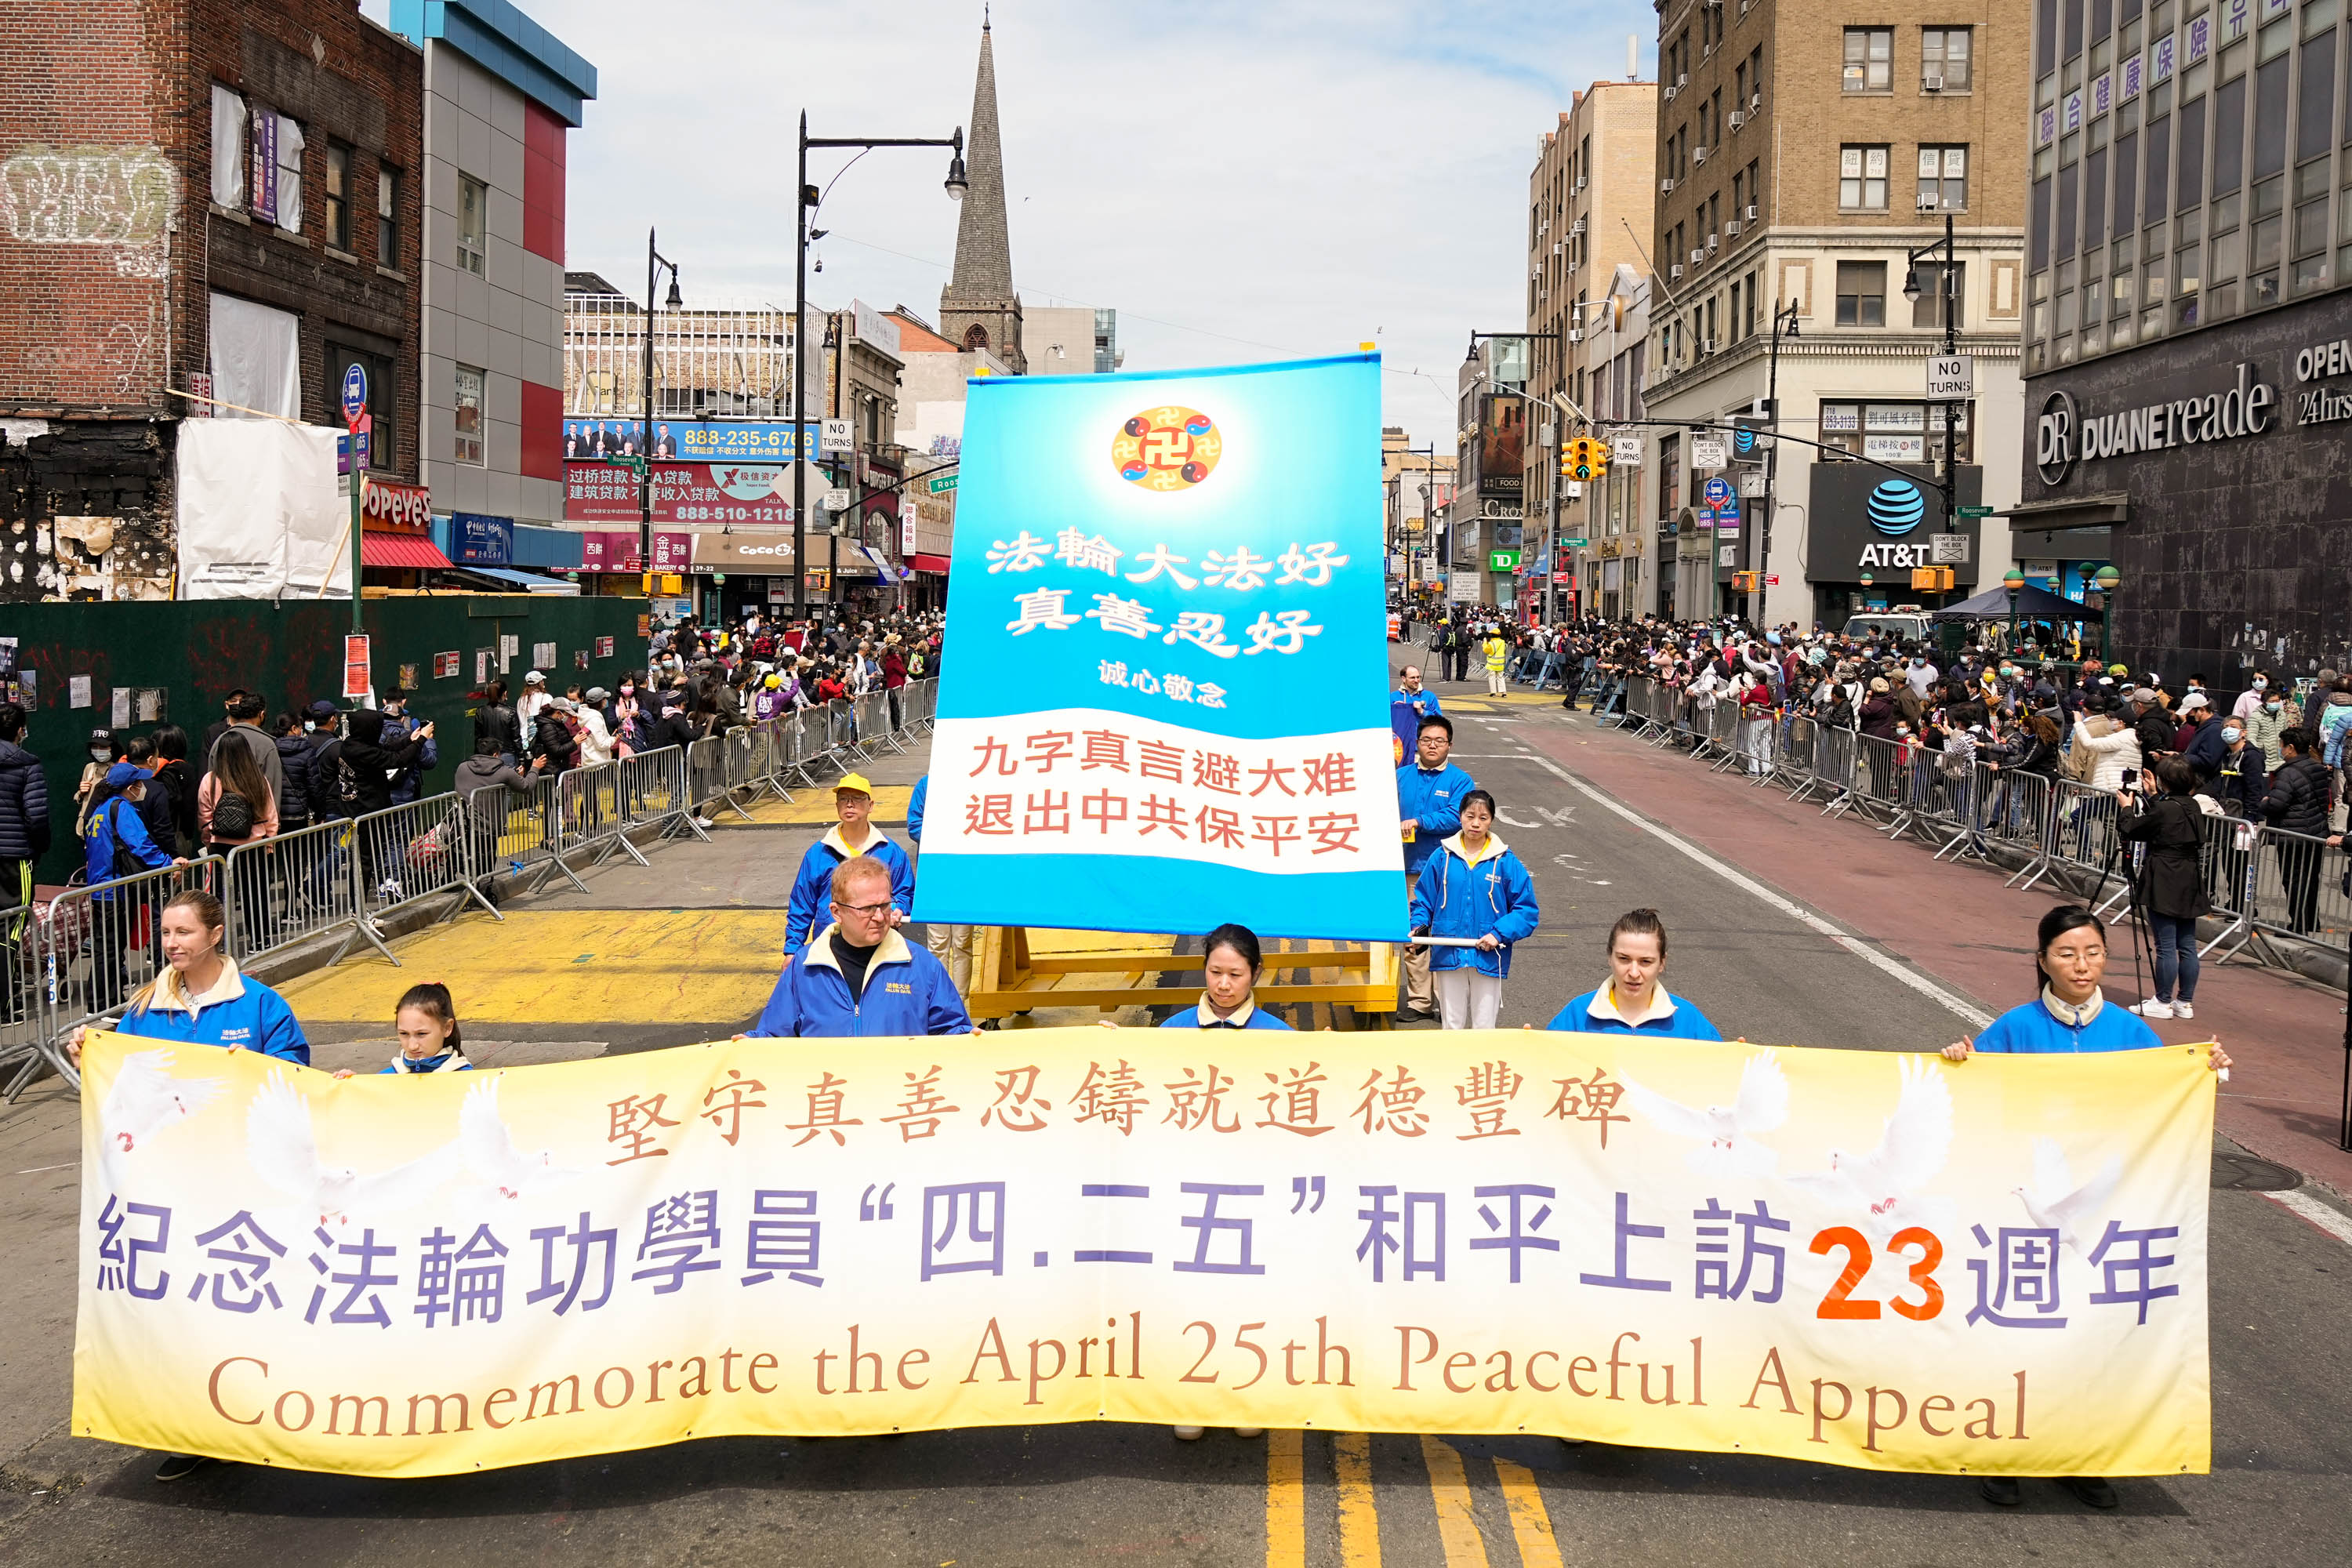 Image for article Nova York: Desfile comemora apelo pacífico na China há 23 anos